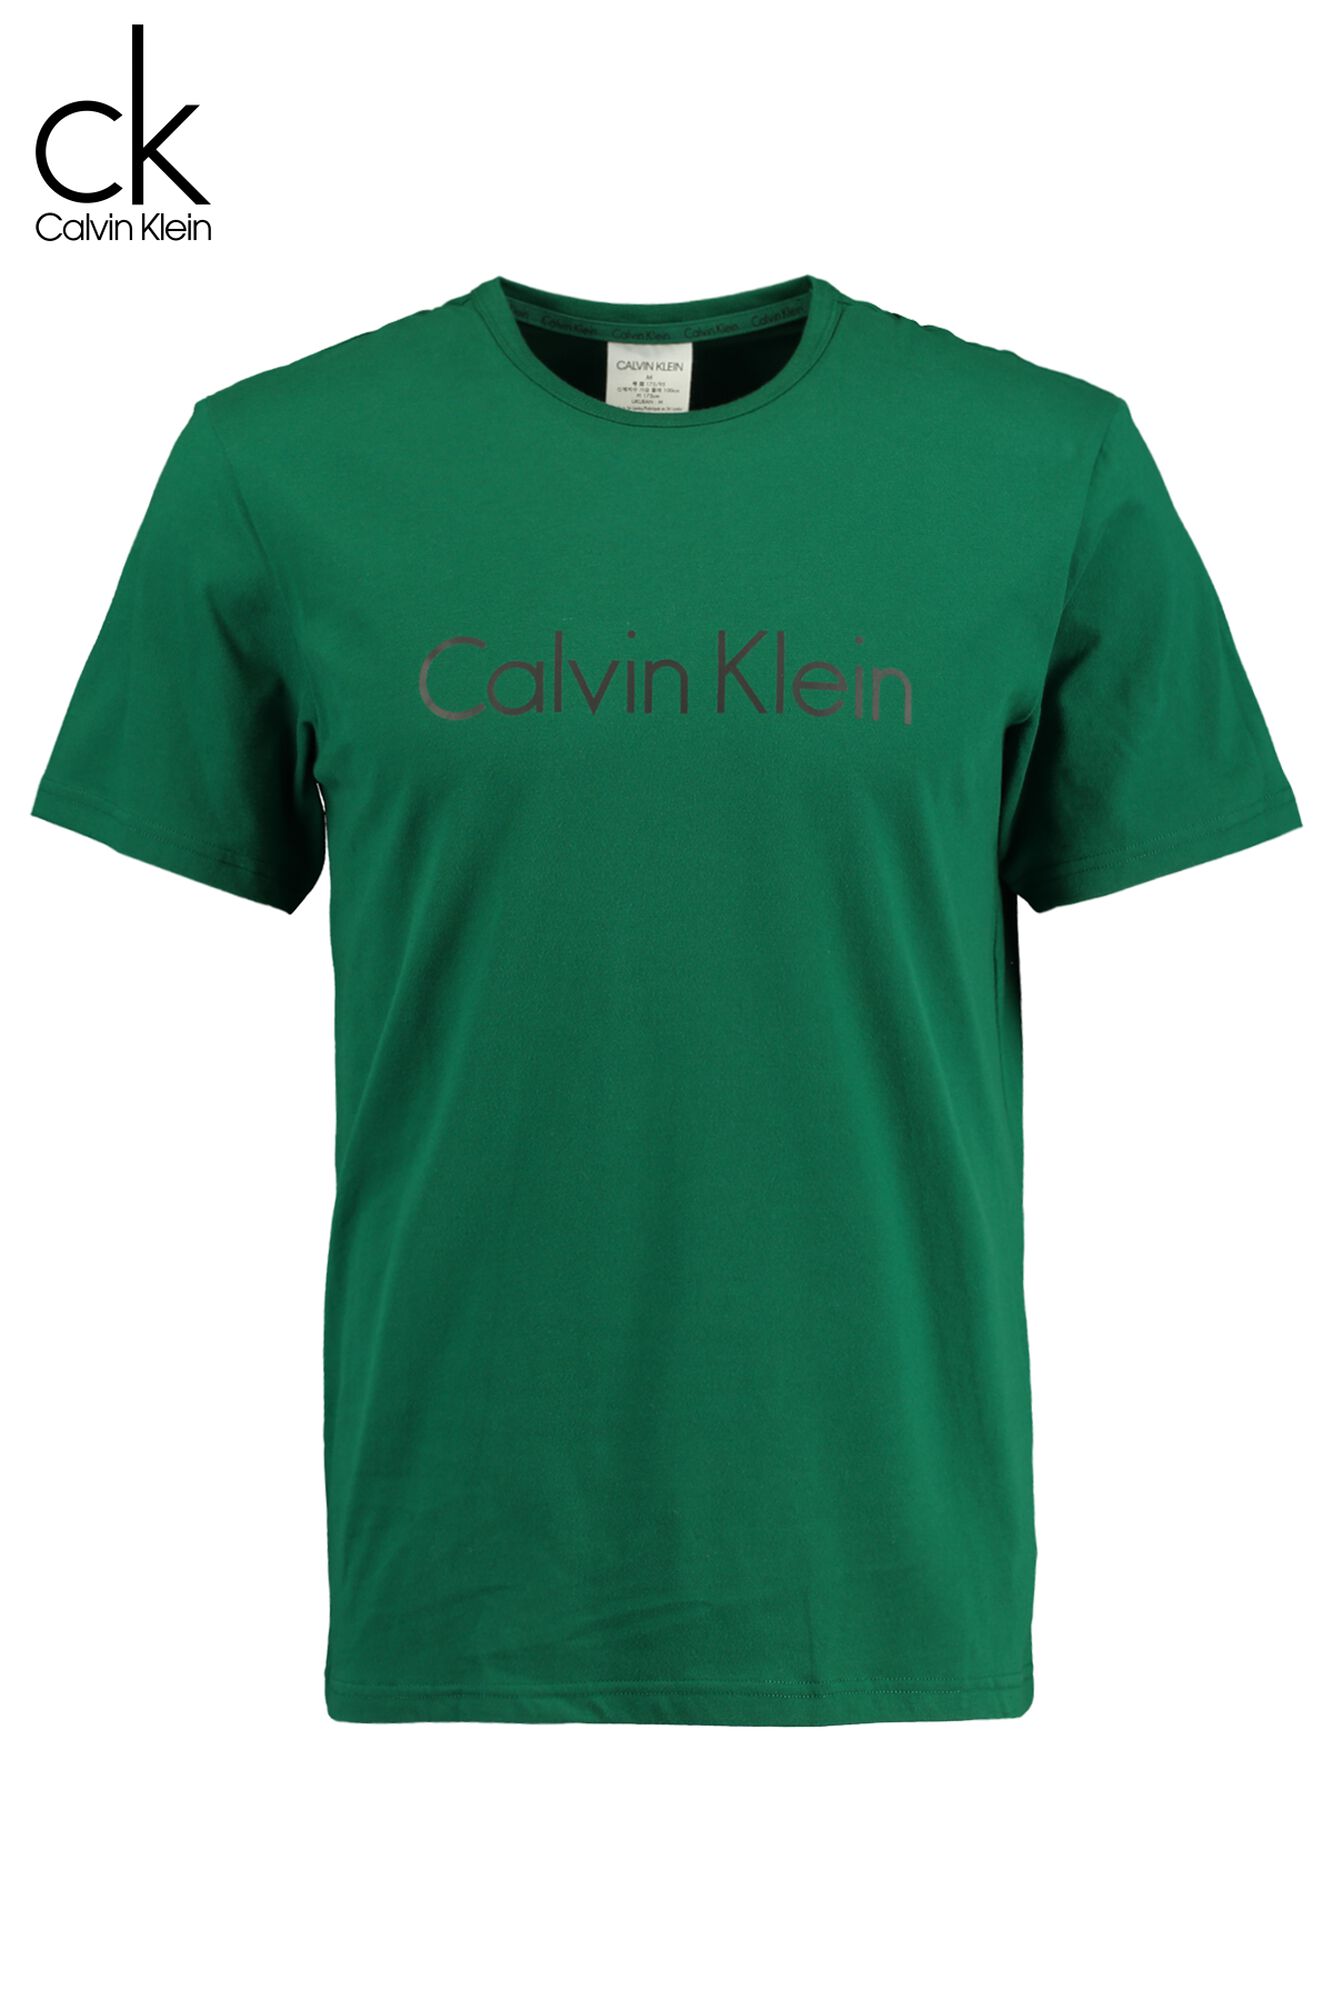 عظم الوجنة استوعب أنكر calvin klein t shirt sale herren - interappacad.org